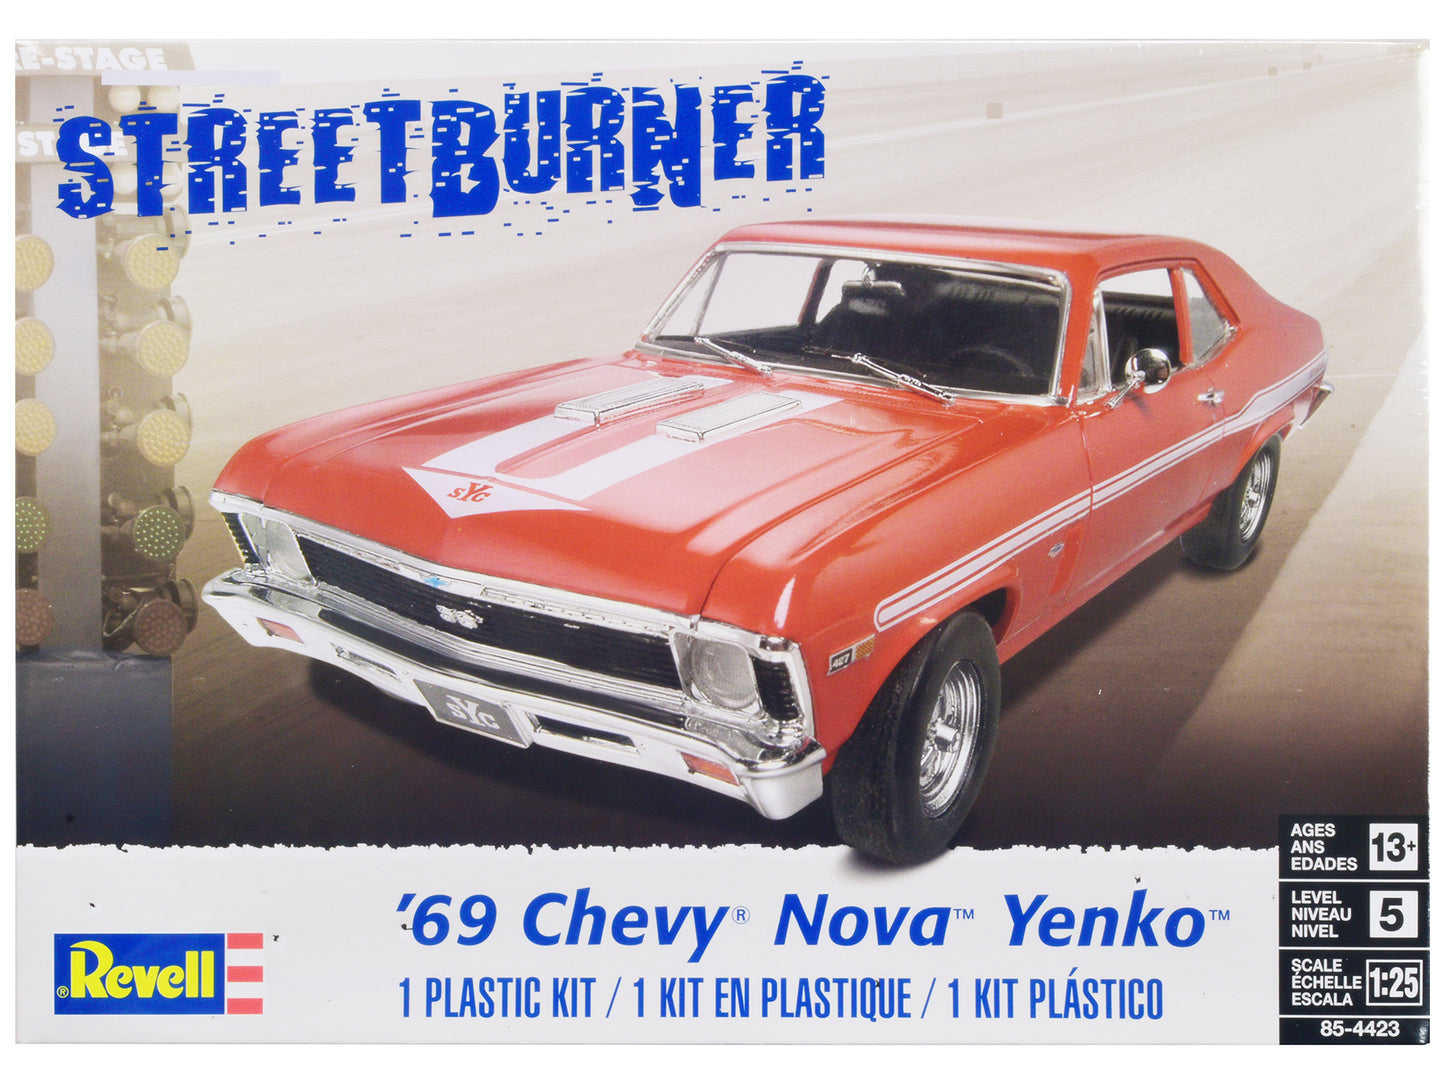 Level 5 Model Kit 1969 Chevrolet Nova Yenko "Street Burner" 1/25 Scale Model by Revell